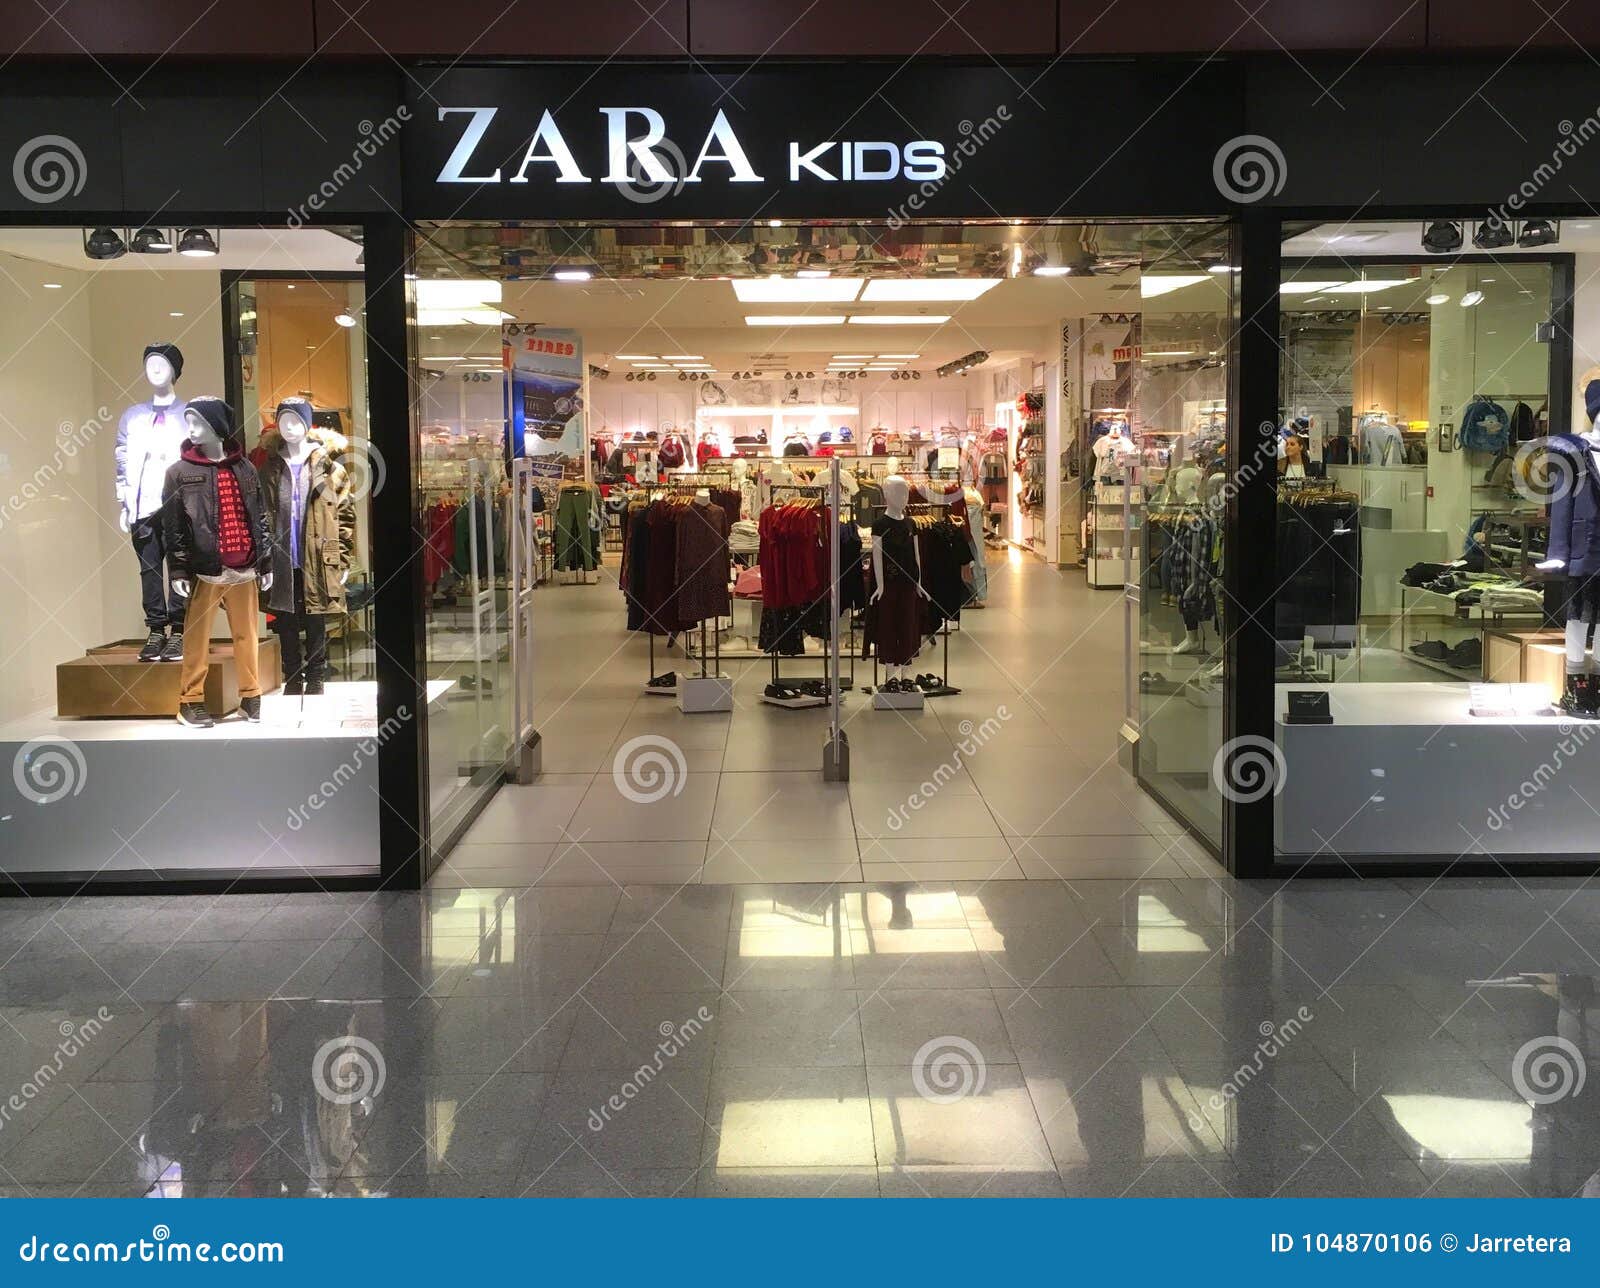 zara kids store near me